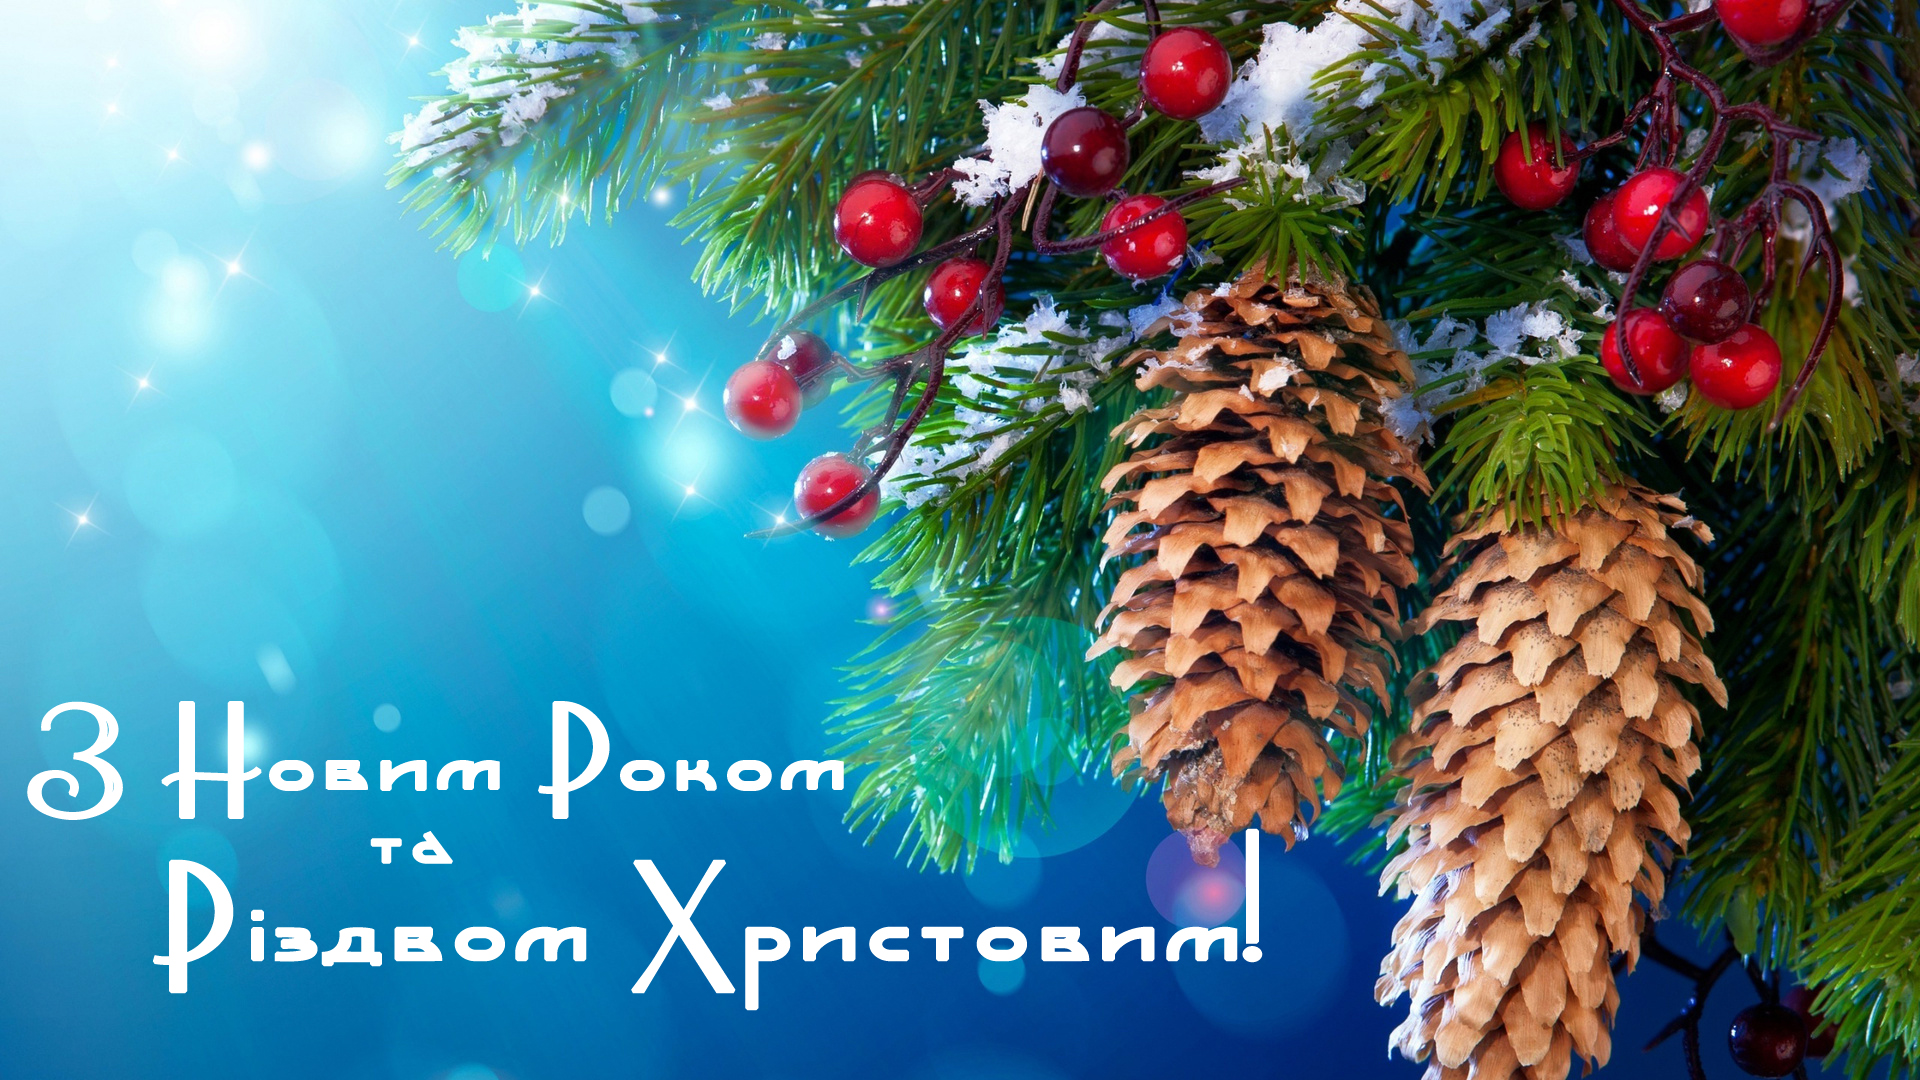 Шановні друзі та колеги, щиро вітаємо вас з Новим роком та Різдвом Христовим!